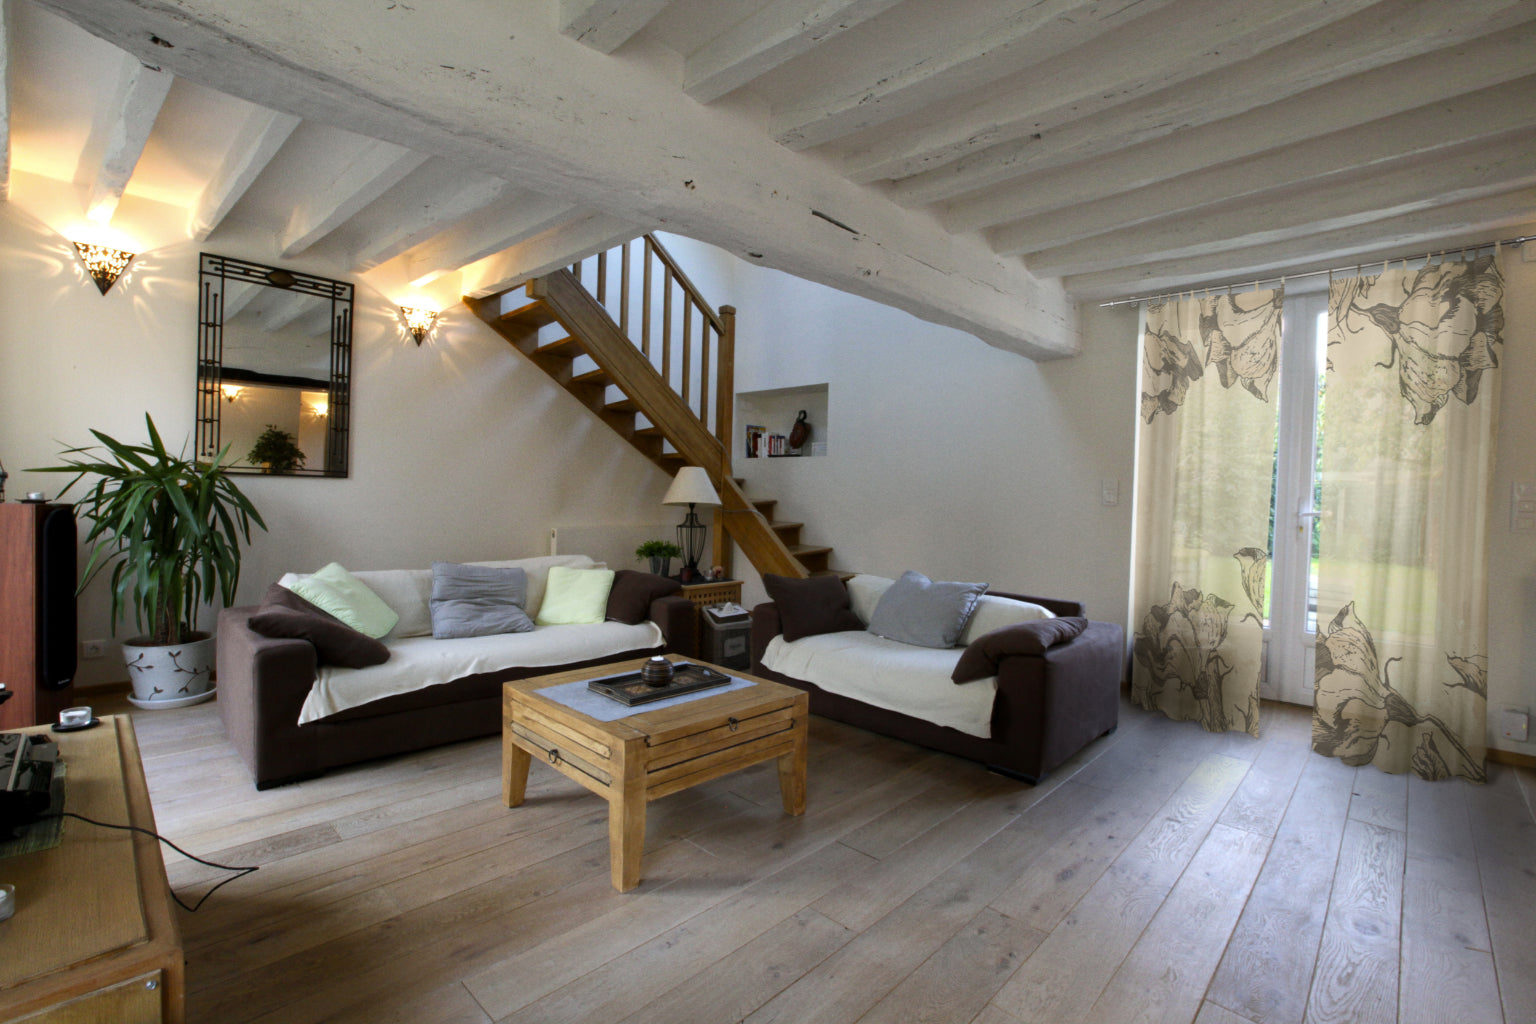 Fotovorhang mit Motiv Floral im Wohnzimmer im skandinavischen Hygge Stil mit viel Holz